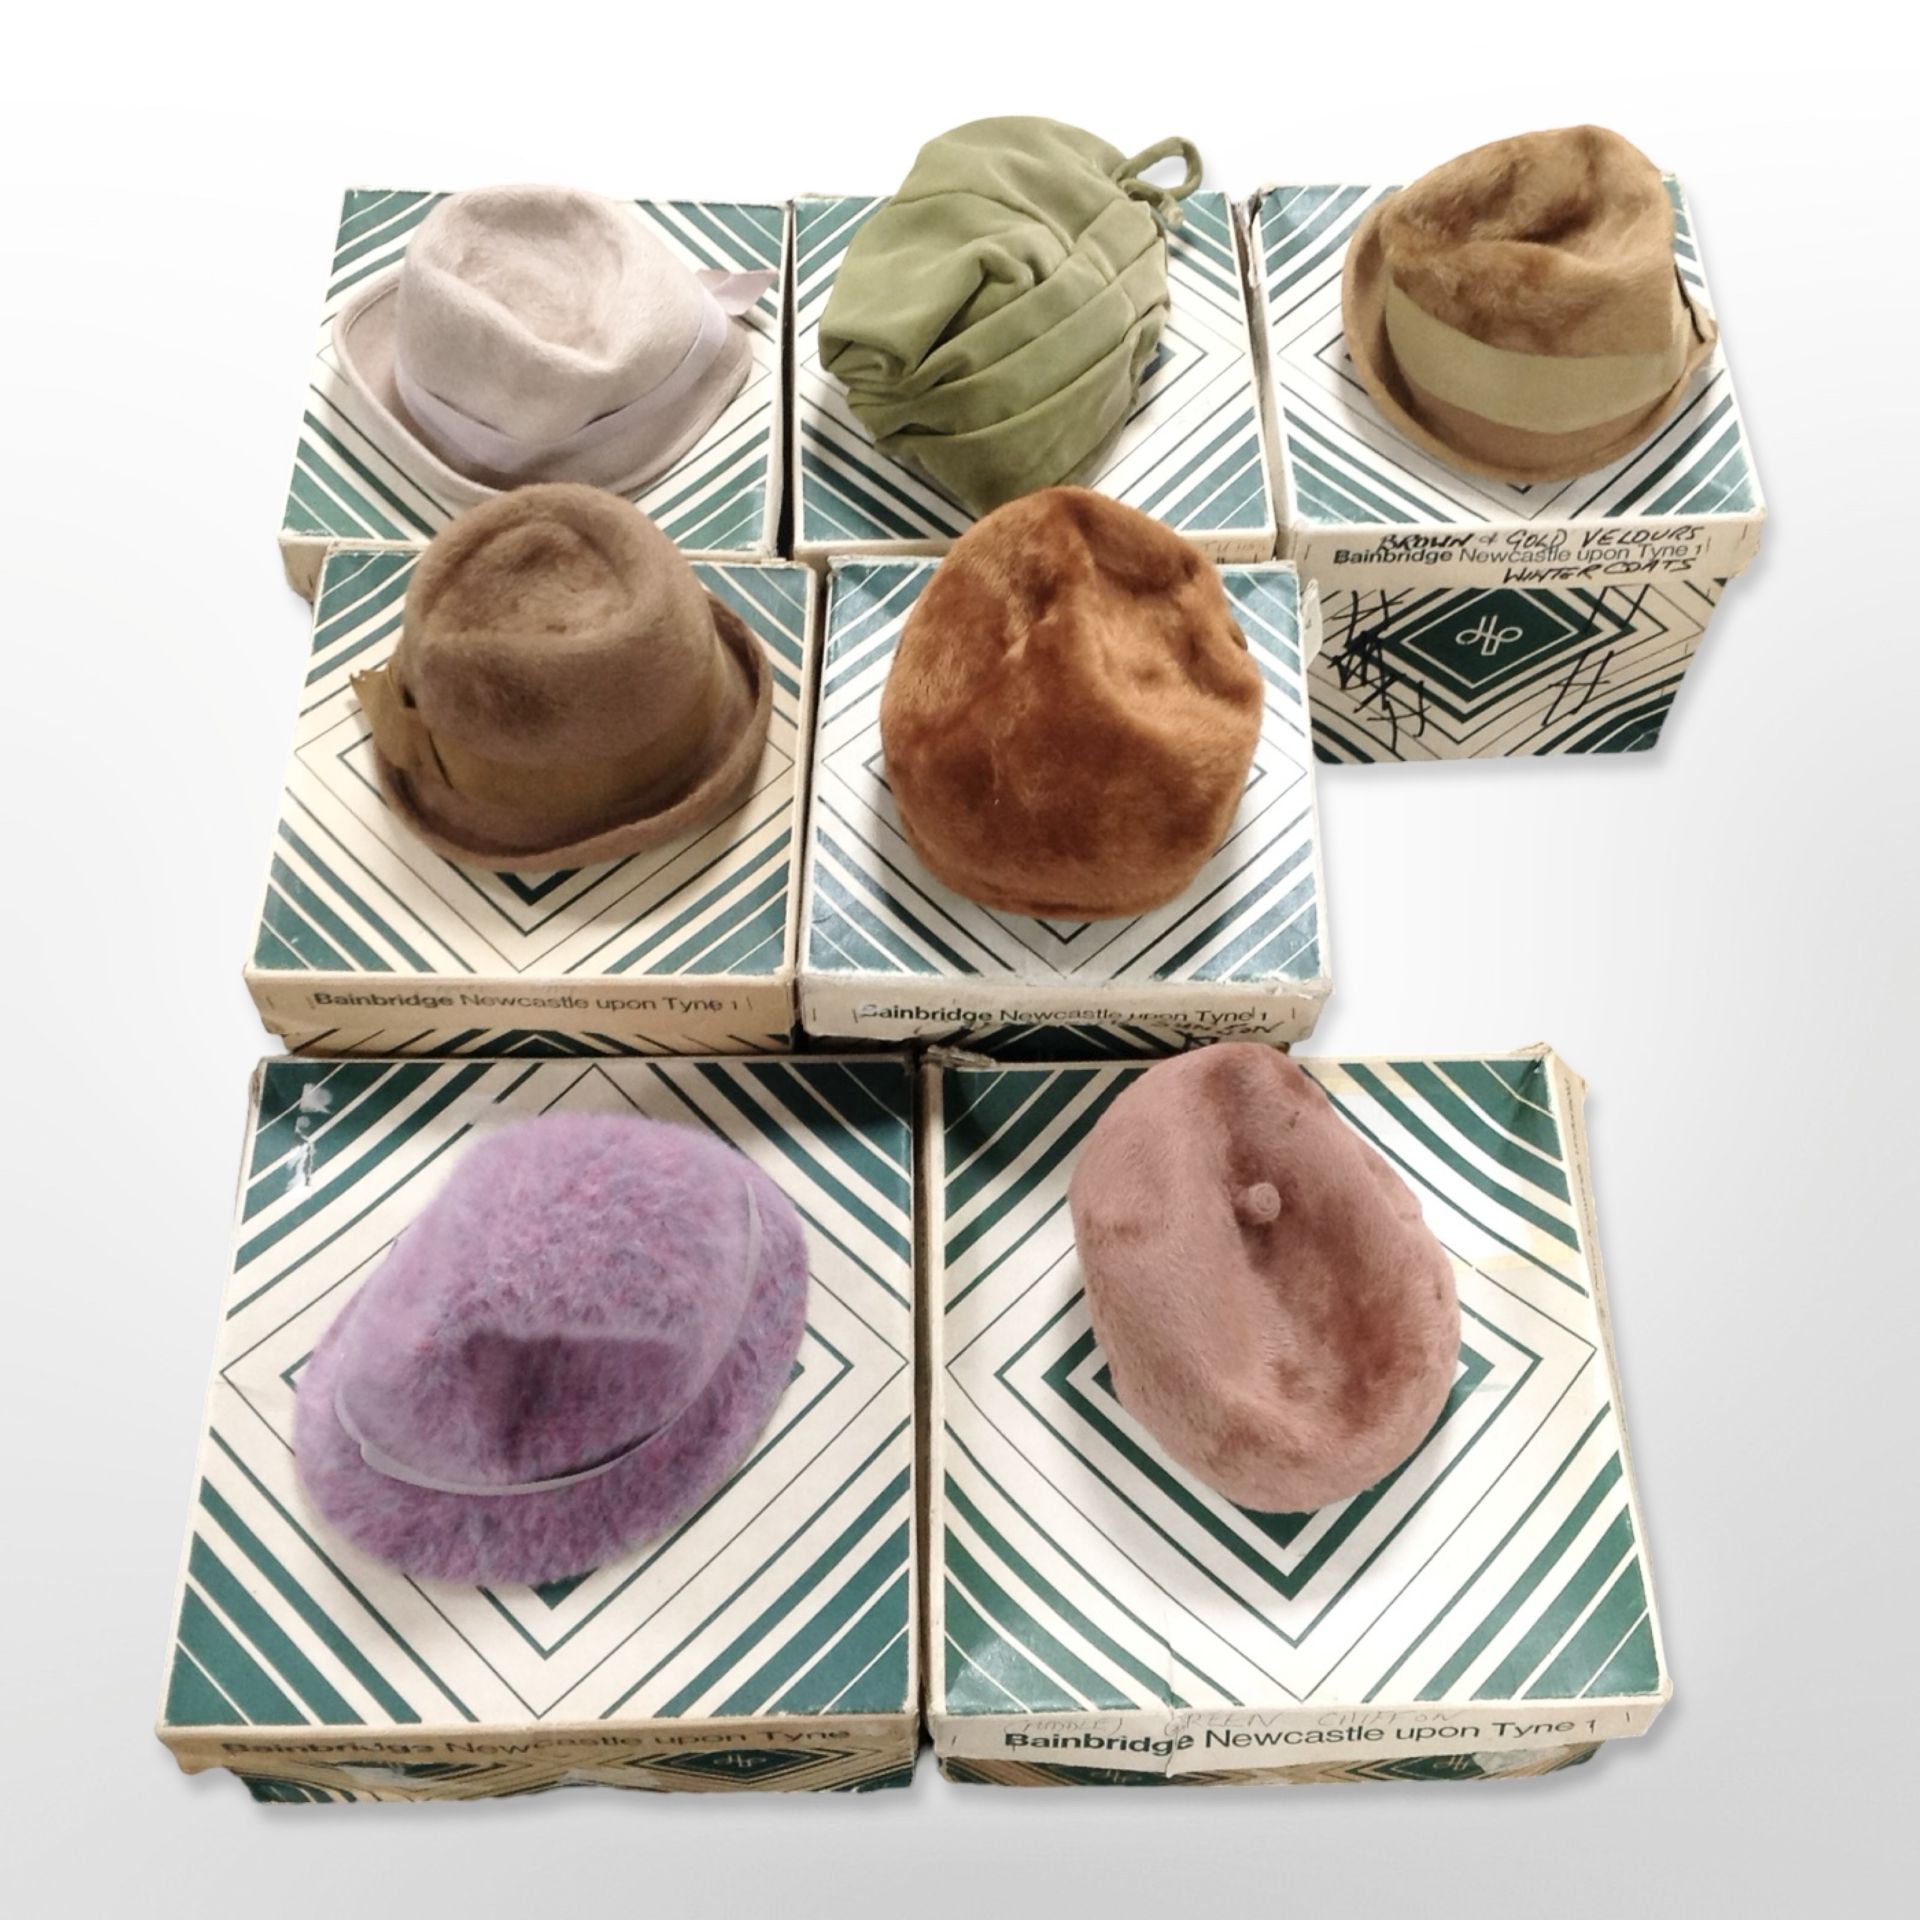 Seven vintage lady's hats in original Bainbridge boxes.